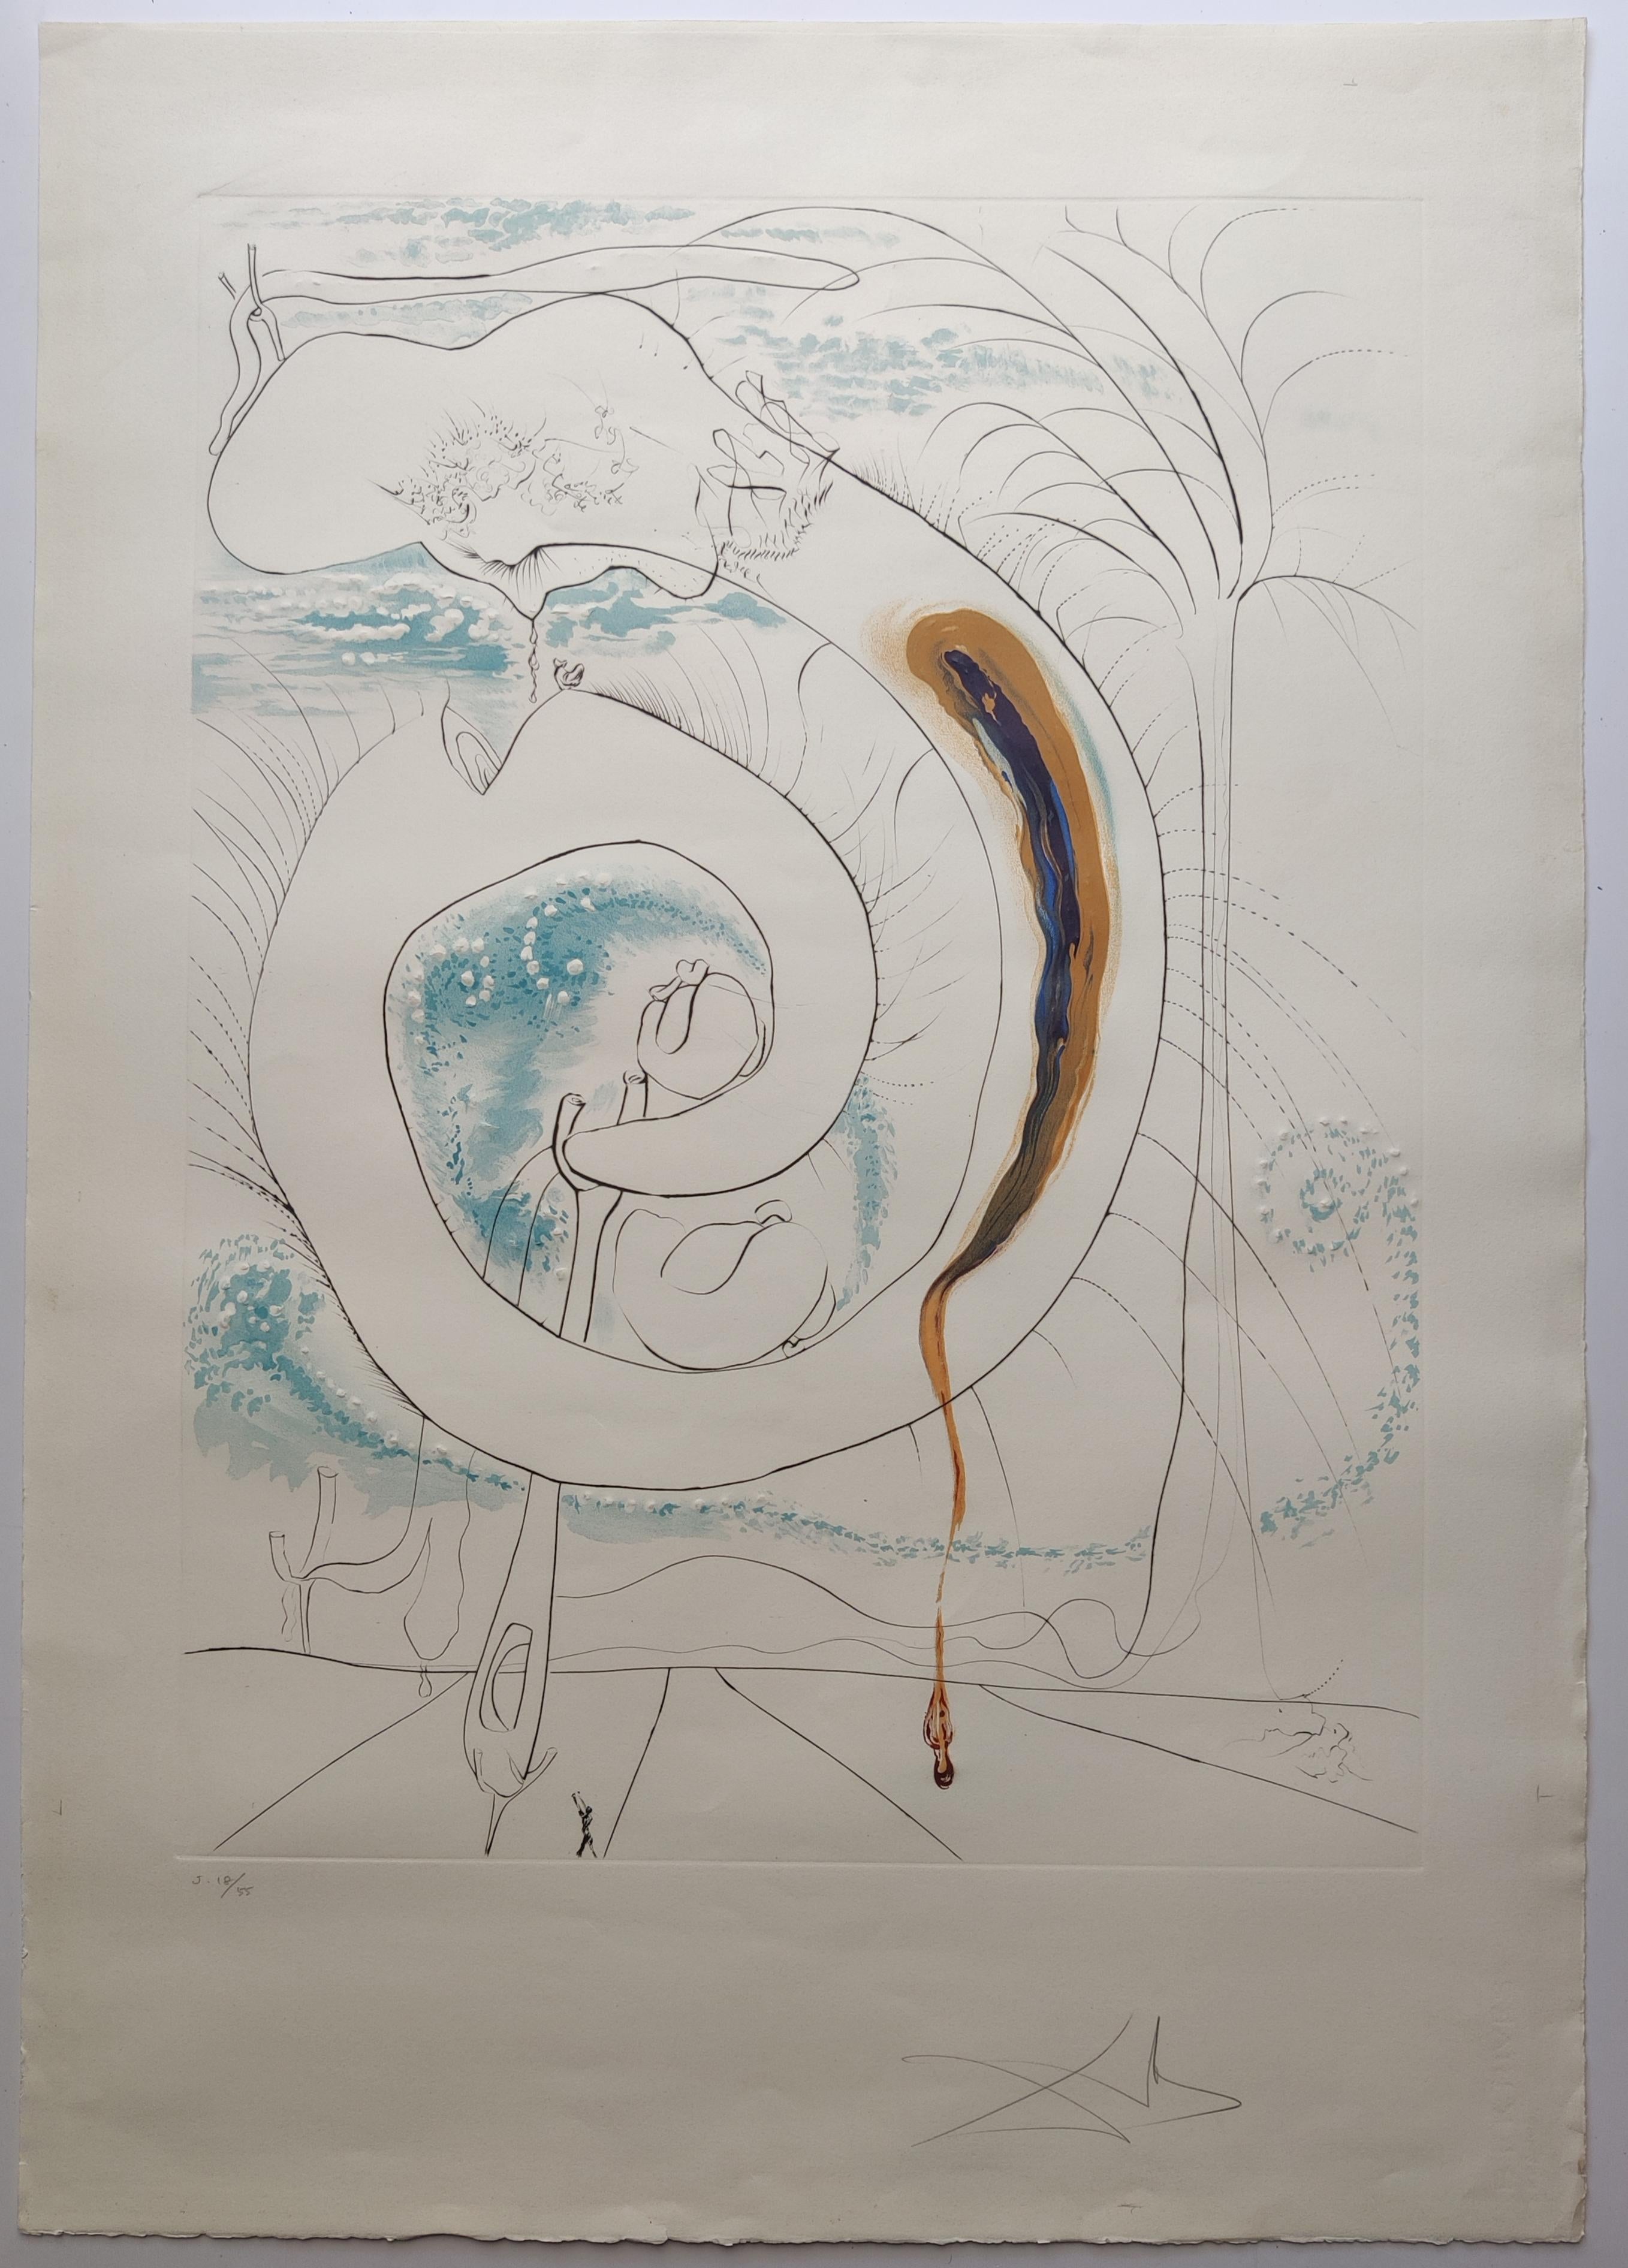 Salvador Dali
Le Cercle viscéral du cosmos du portfolio La Conquête du Cosmos, 1974
Lithographie 
Signature manuscrite au crayon en bas à droite 
Édition J 18/55 en bas à gauche.   
Taille de la feuille : 100 x 70 cm.
Imprimé par l'Atelier